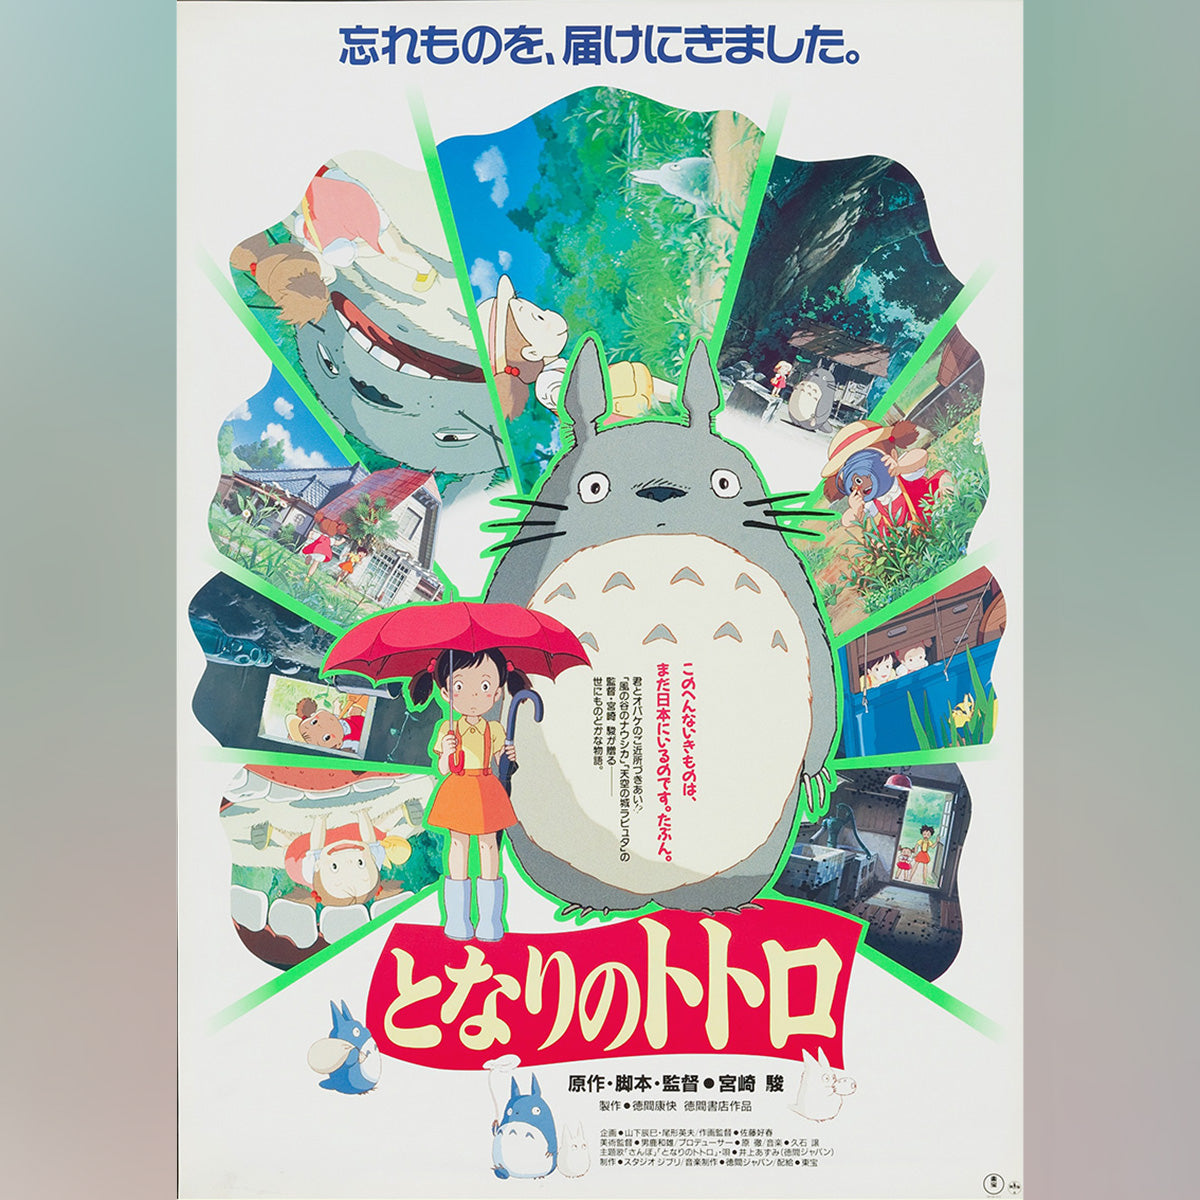 Original Movie Poster of My Neighbor Totoro (1988)